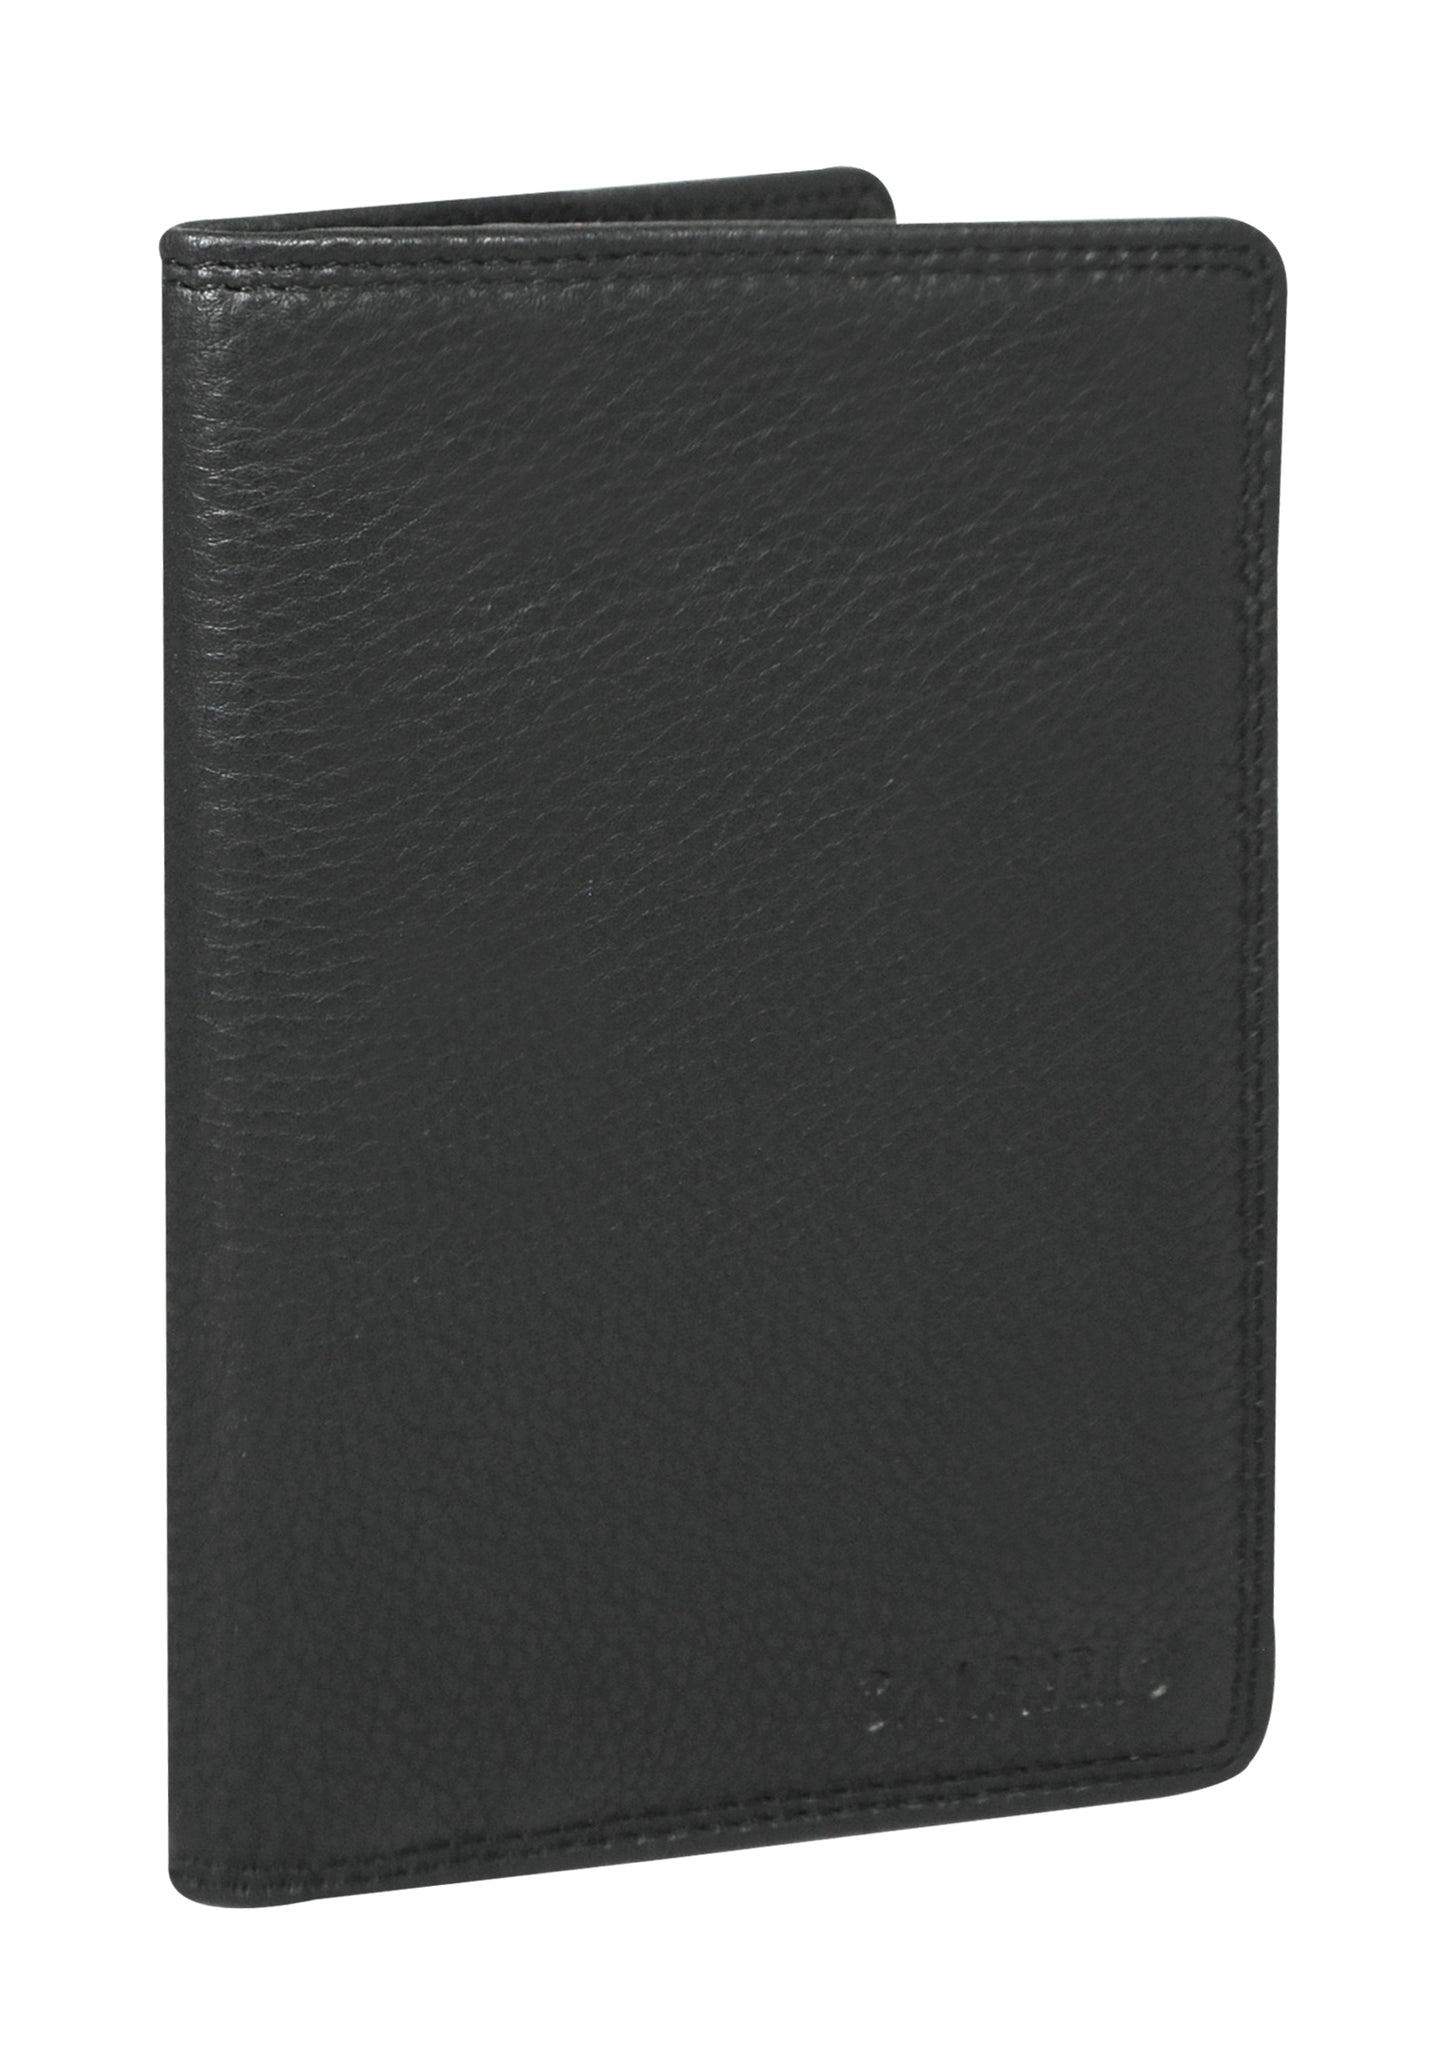 Calfnero Genuine Leather Passport Wallet-Passport Holder (5232-Black)